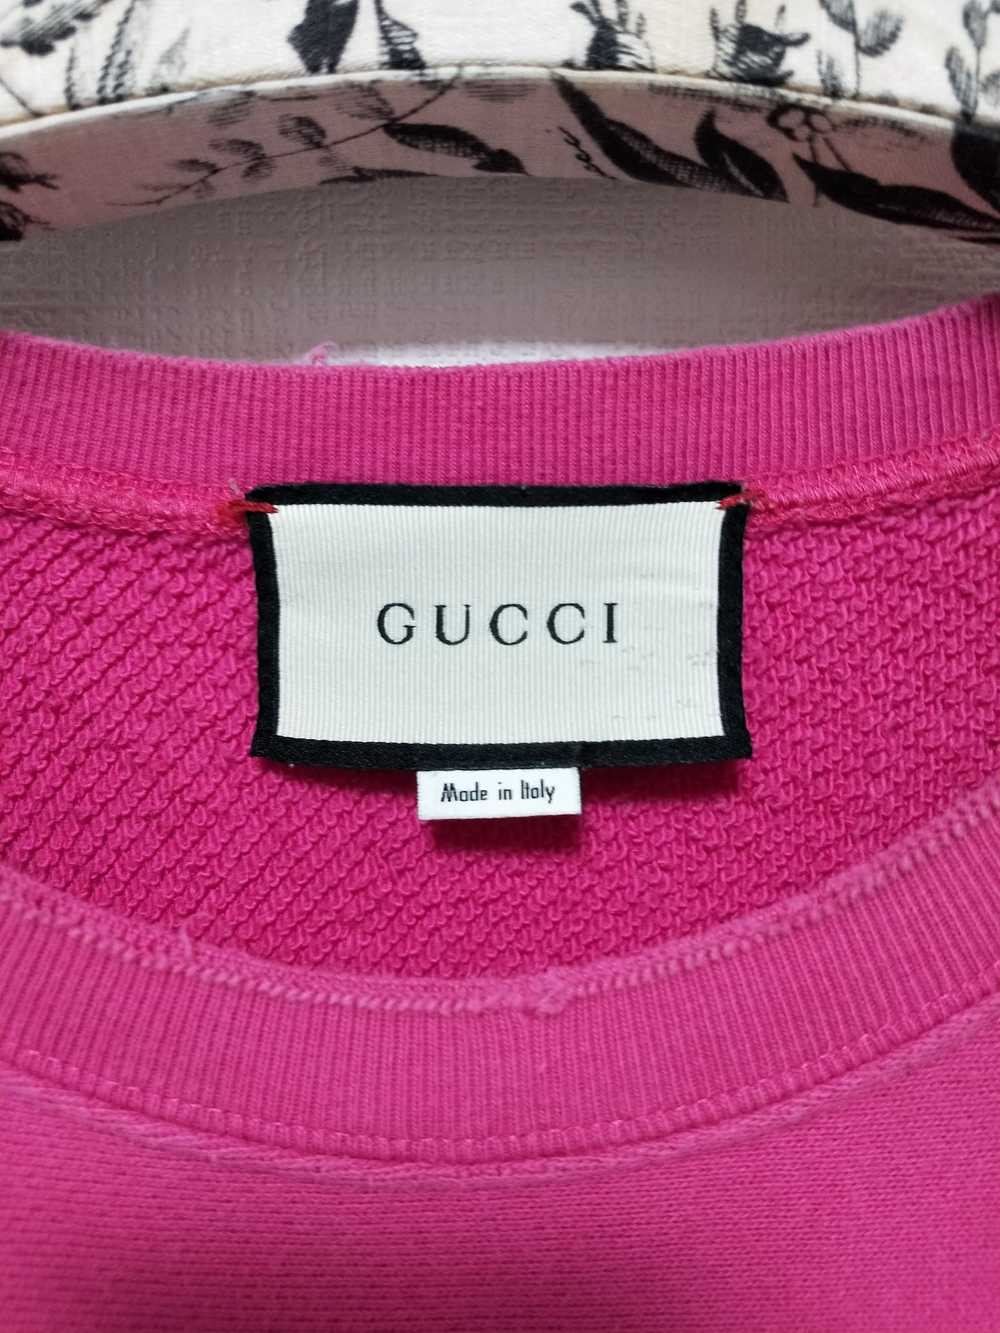 Gucci 'Guccy' Teddy Bear Sweatshirt - image 5